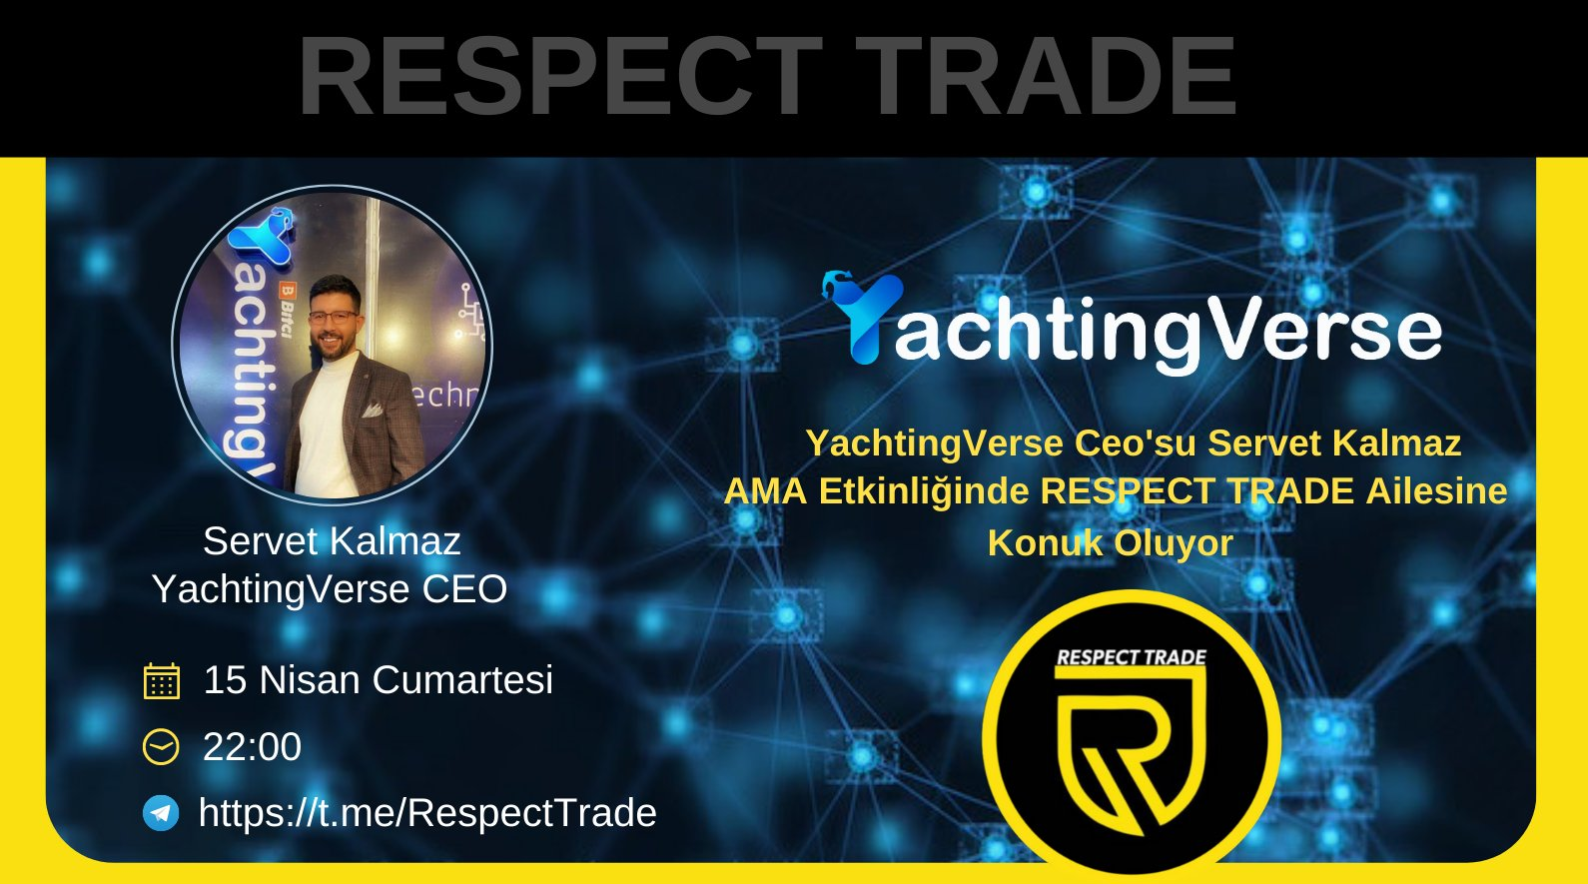  Respect Trade, özel bir AMA etkinliği düzenliyor ve @YachtingVerse'in CEO'su Servet Kalmaz ile heyecan verici bir sohbet gerçekleştiriyor!